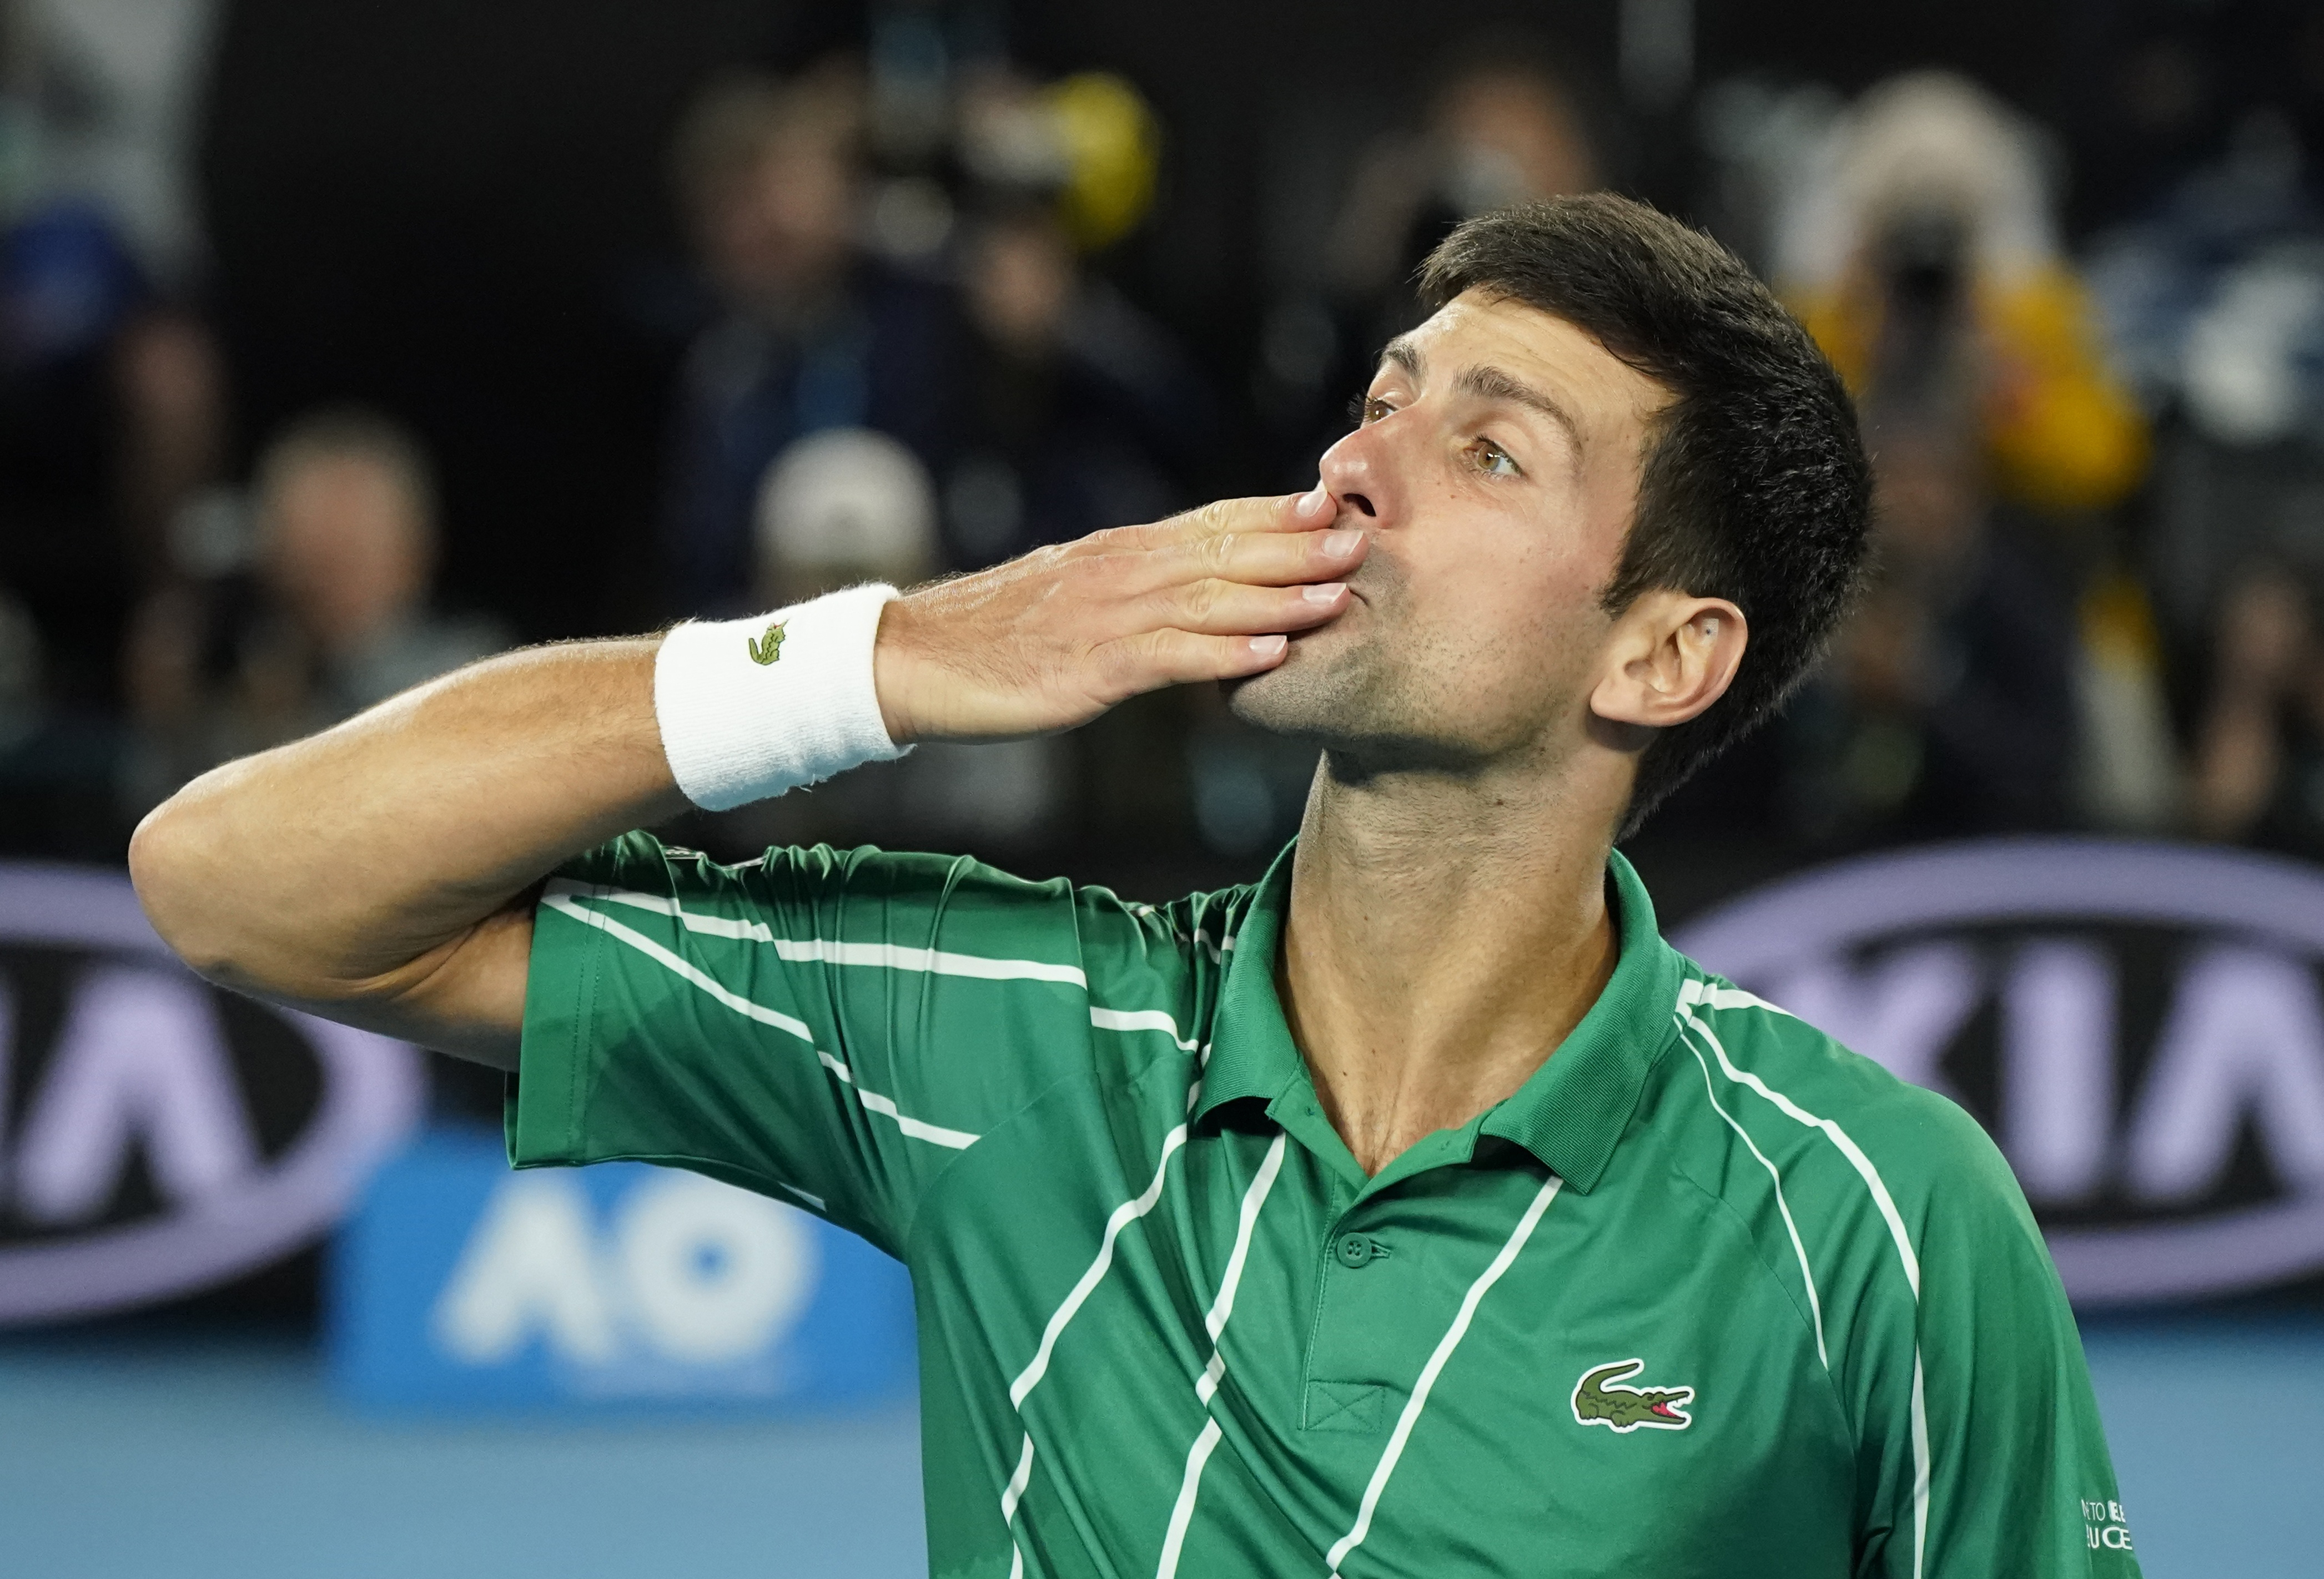 Novak Djokovic gana el Abierto de Australia y recupera el número 1 del mundo